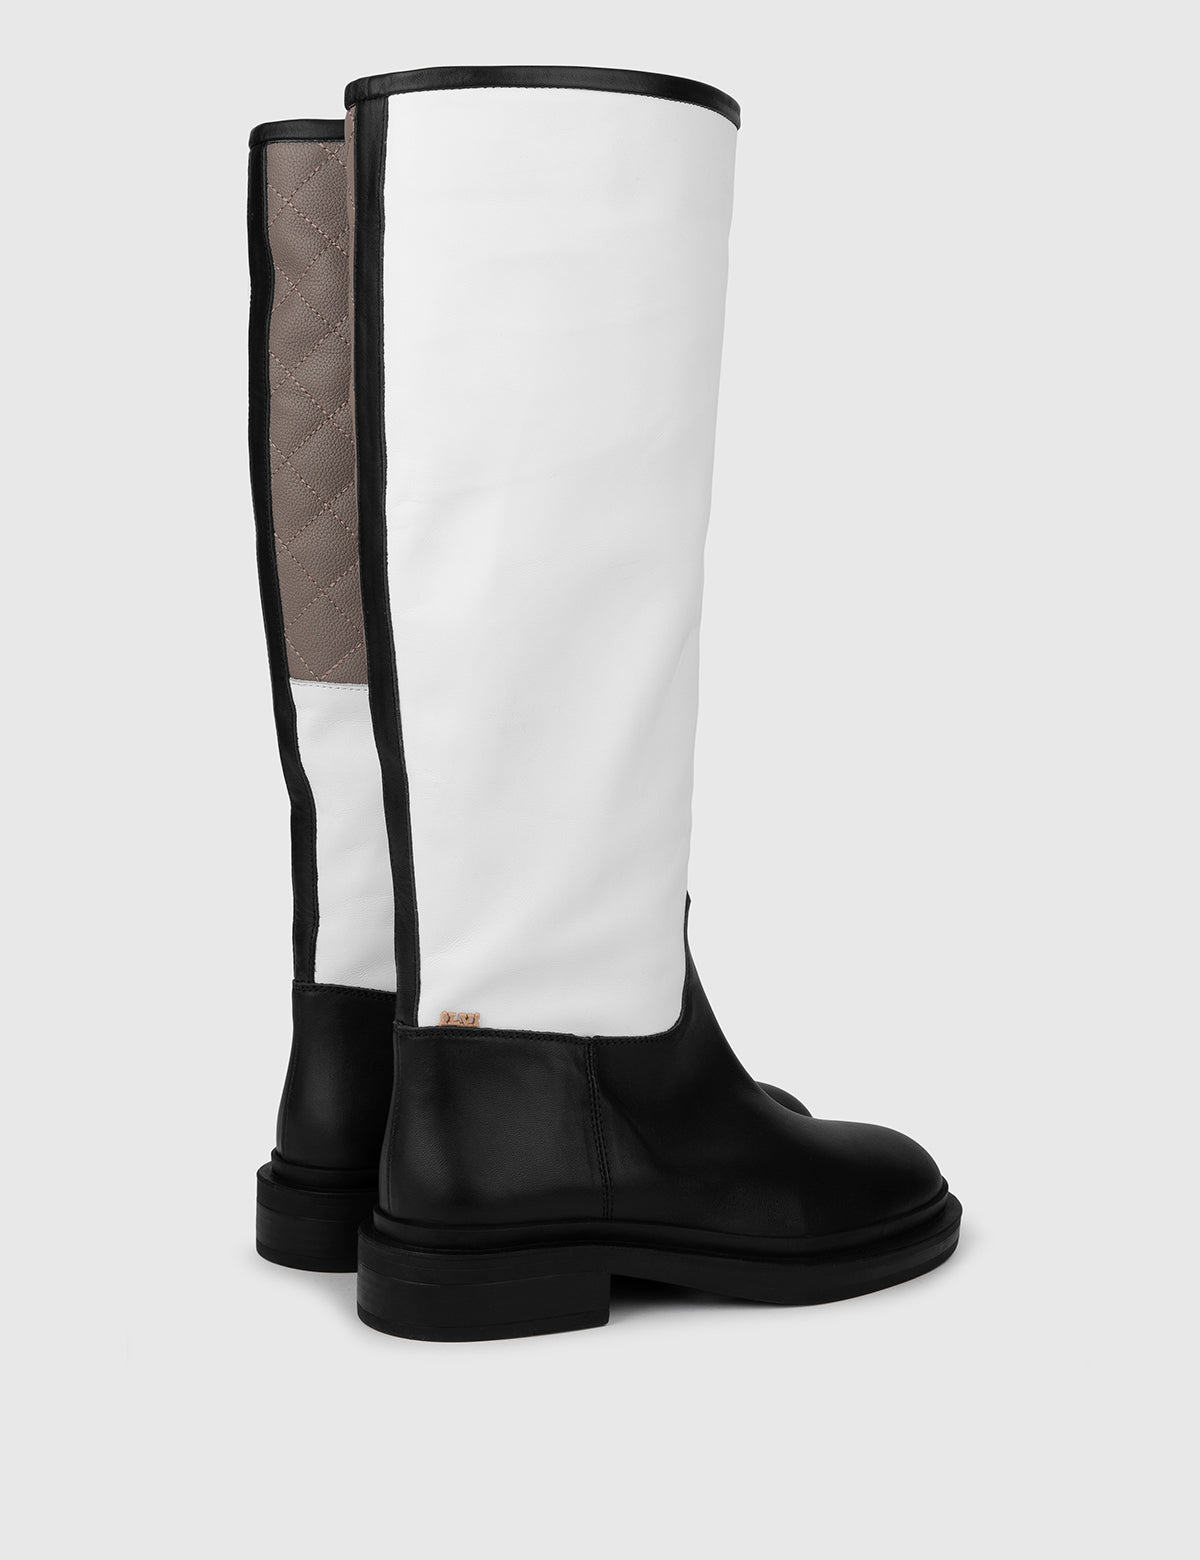 Dato Damen-Stiefel aus schwarzem, weißem und nerzfarbenem Leder